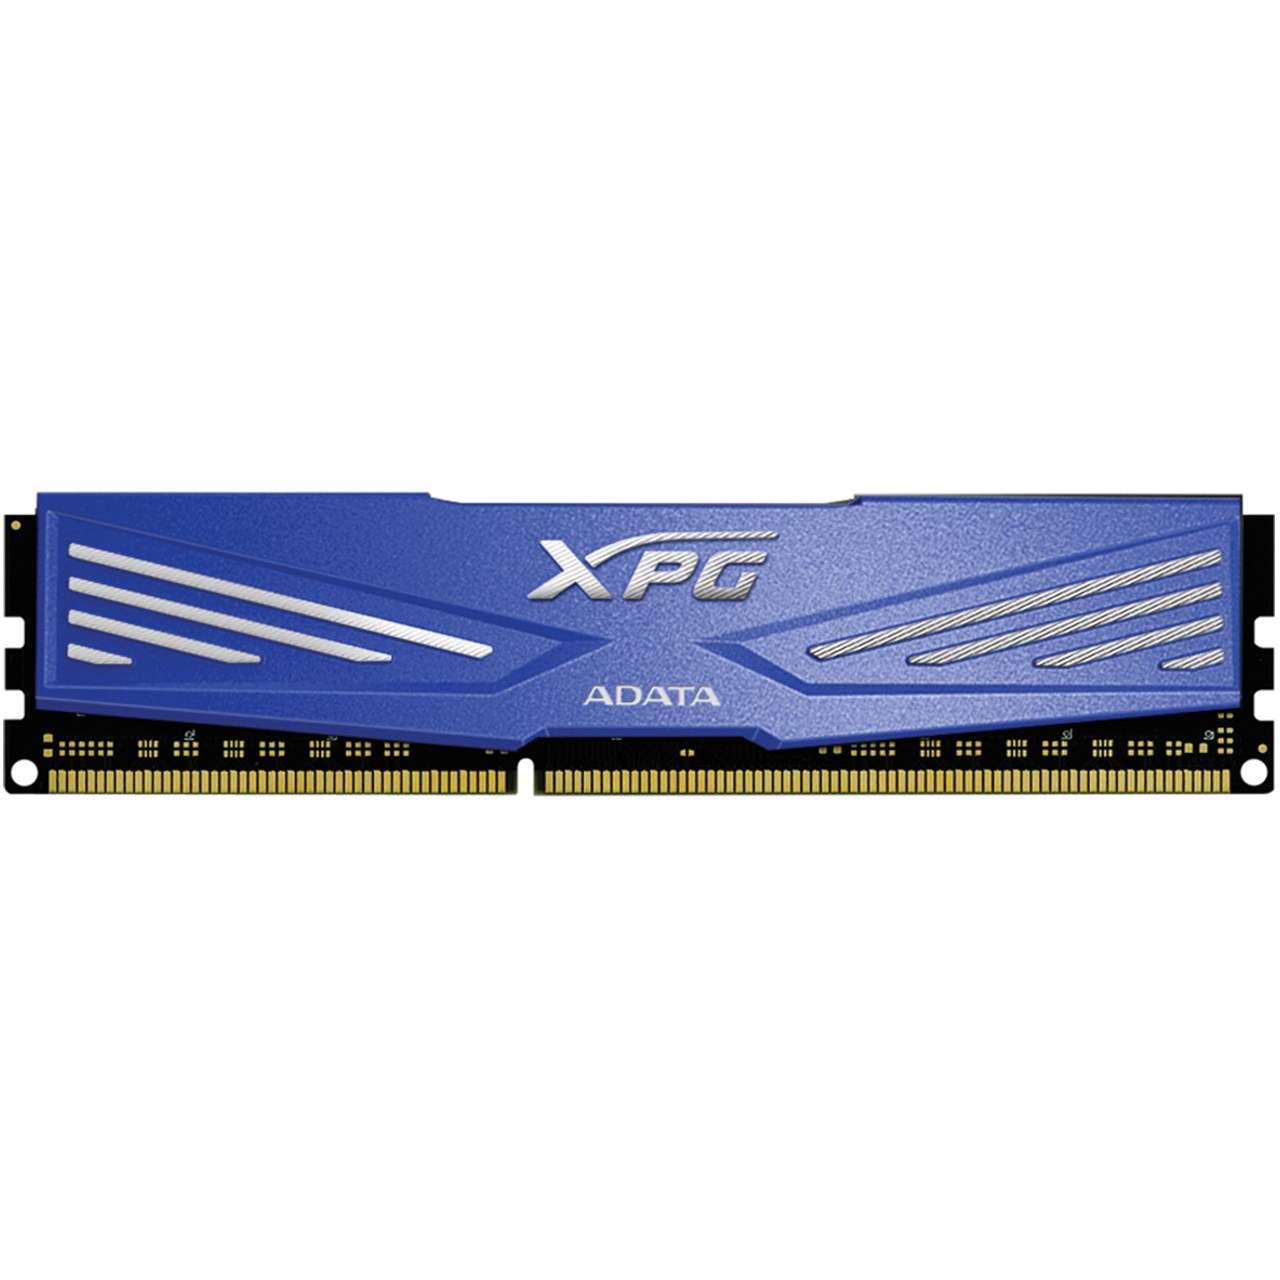 رم دسکتاپ DDR3 تک کاناله 1600 مگاهرتز CL11 ای دیتا مدل XPG V1 ظرفیت 4 گیگابایت